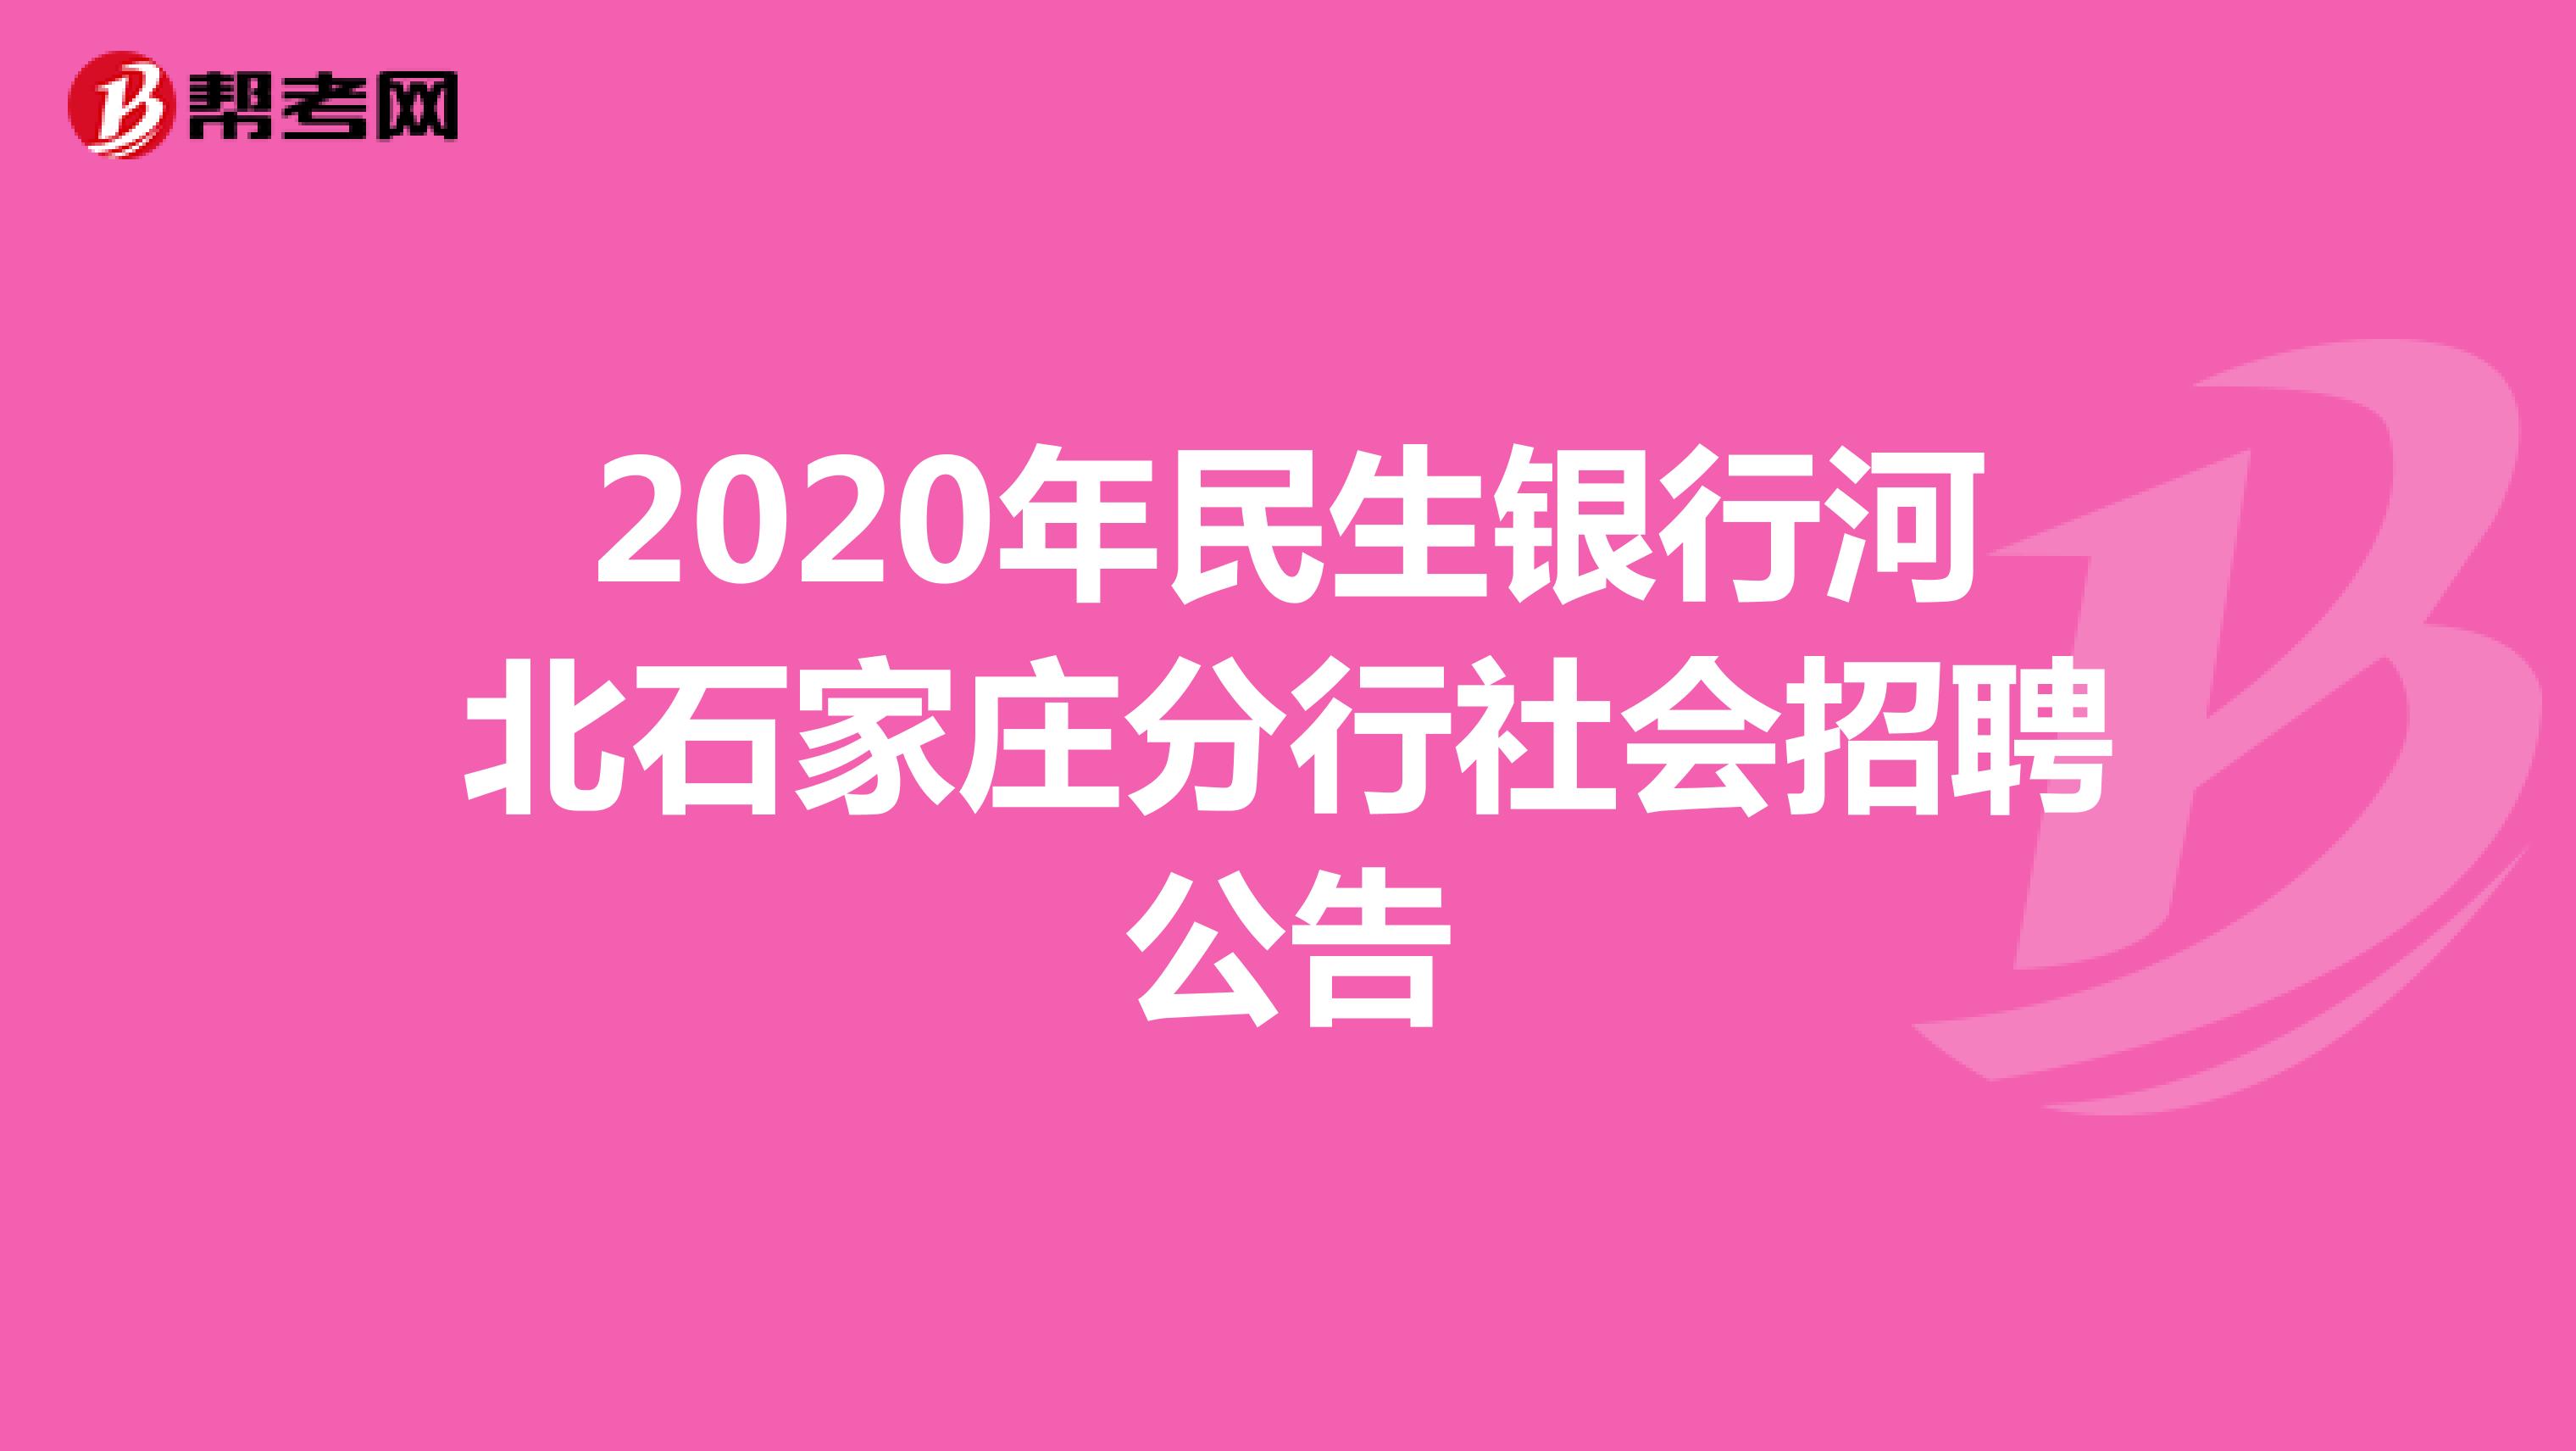 2020年民生银行河北石家庄分行社会招聘公告 